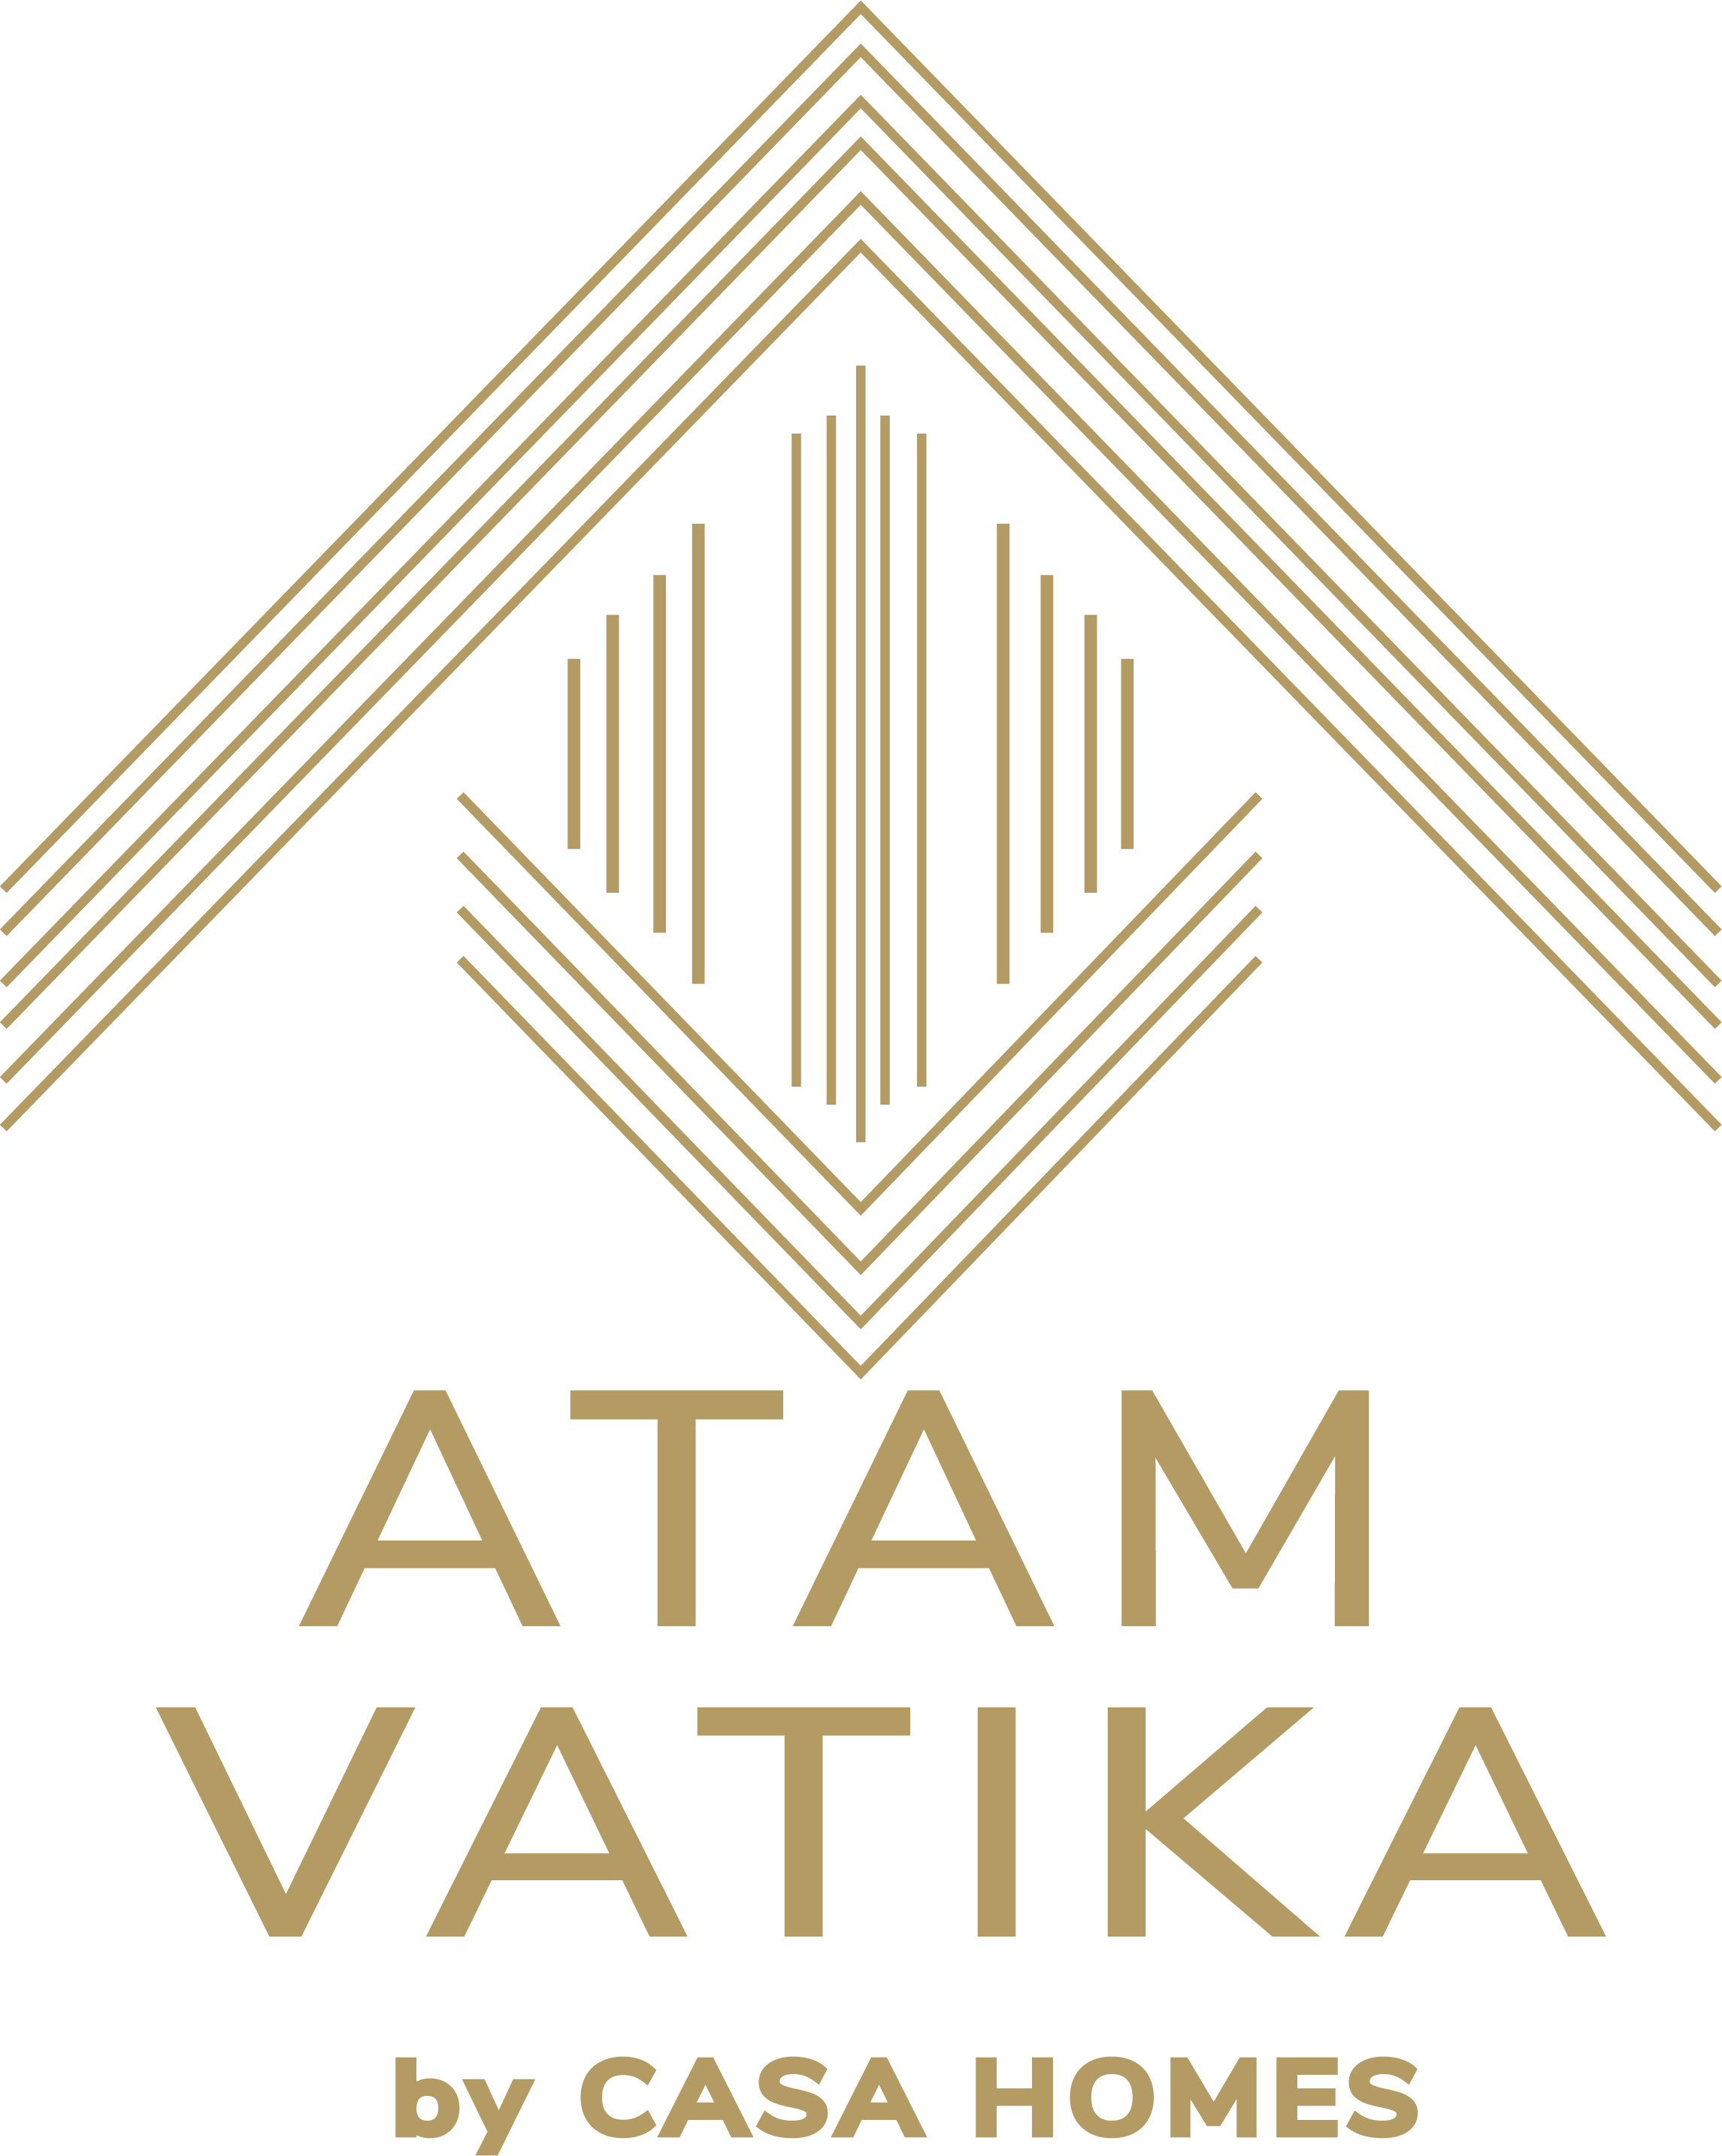 Atam Vatika by Casa Homes